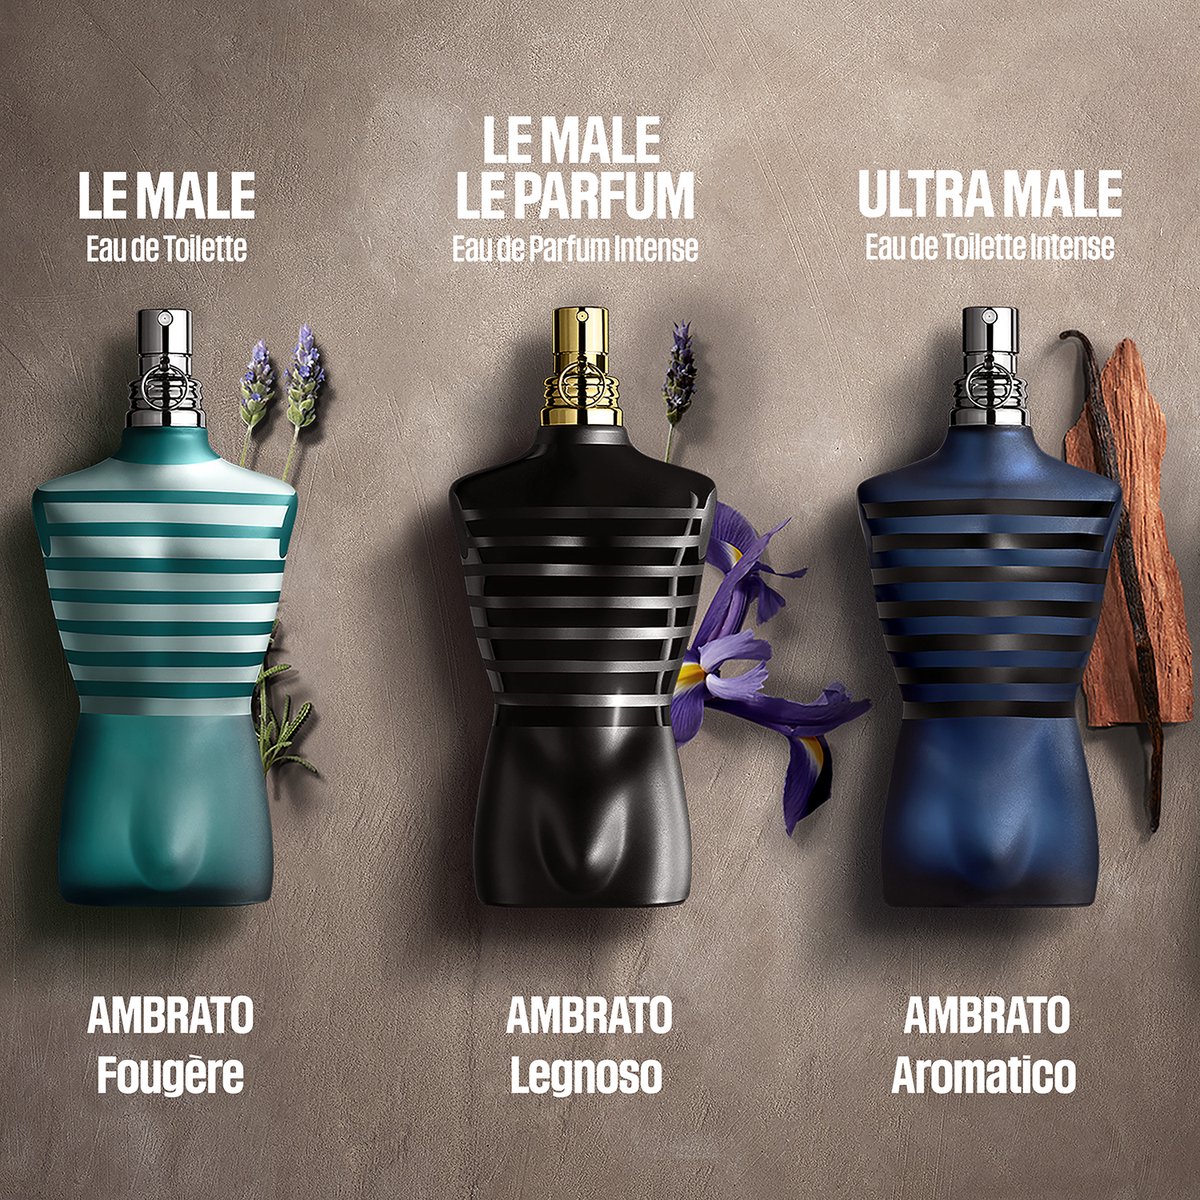 Jean Paul Gaultier Men's Le Male Le Parfum EDP Spray 2.5 oz Fragrances  8435415032278